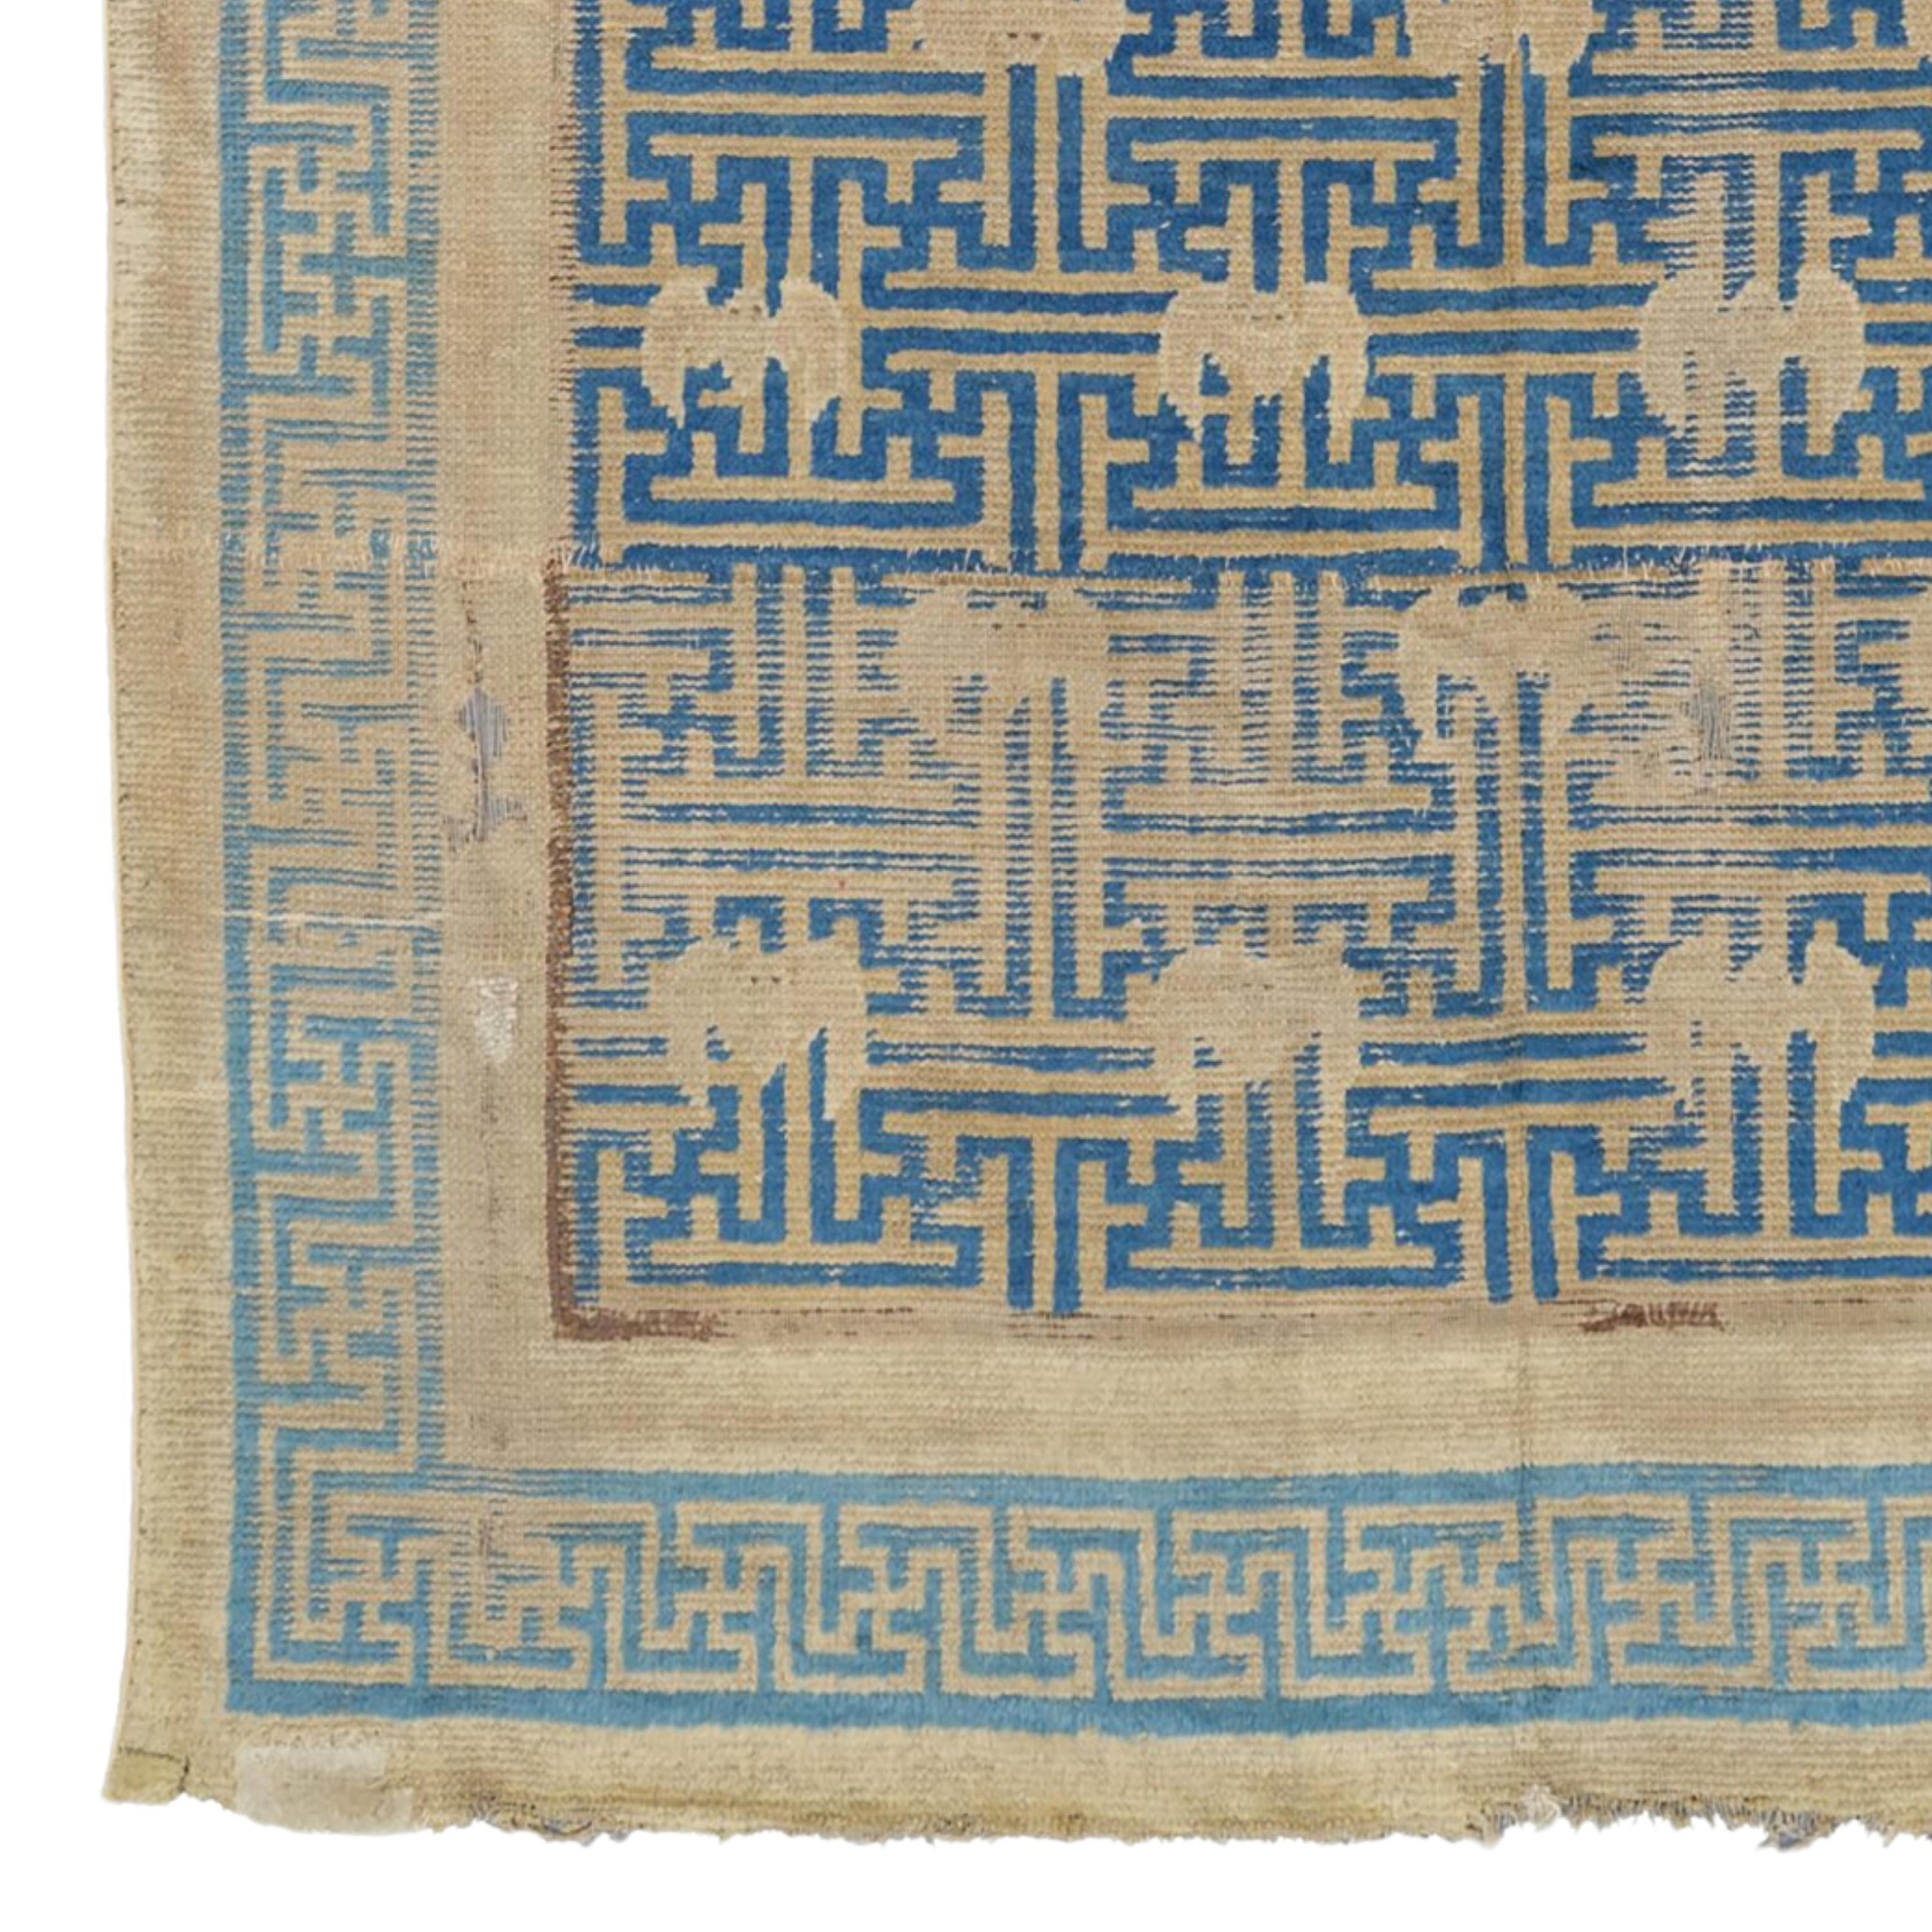 Ein einzigartiges Stück aus dem 17. Jahrhundert: Antiker chinesischer Ningxia-Teppich

Dieser exquisite Wandteppich aus Ningxia aus dem 17. Jahrhundert ist ein seltenes Beispiel für antike chinesische Kunst. Das in satten Blau- und Beigetönen